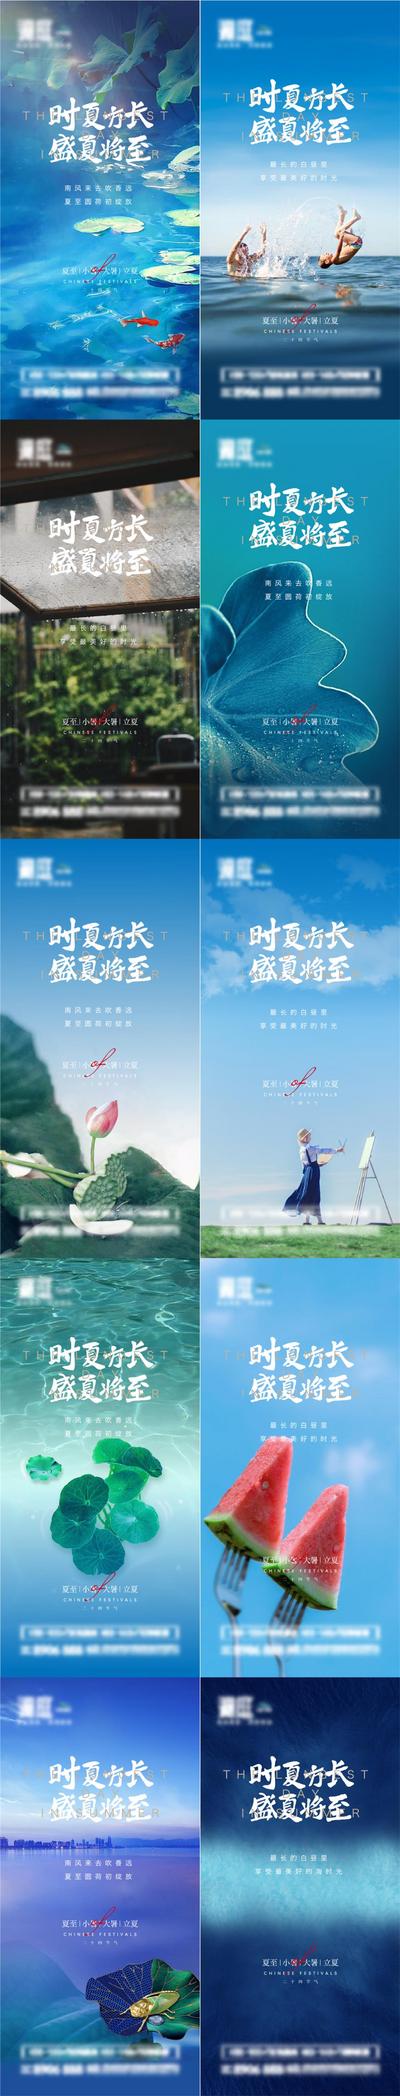 南门网 广告 海报 节气 夏至 风景 系列